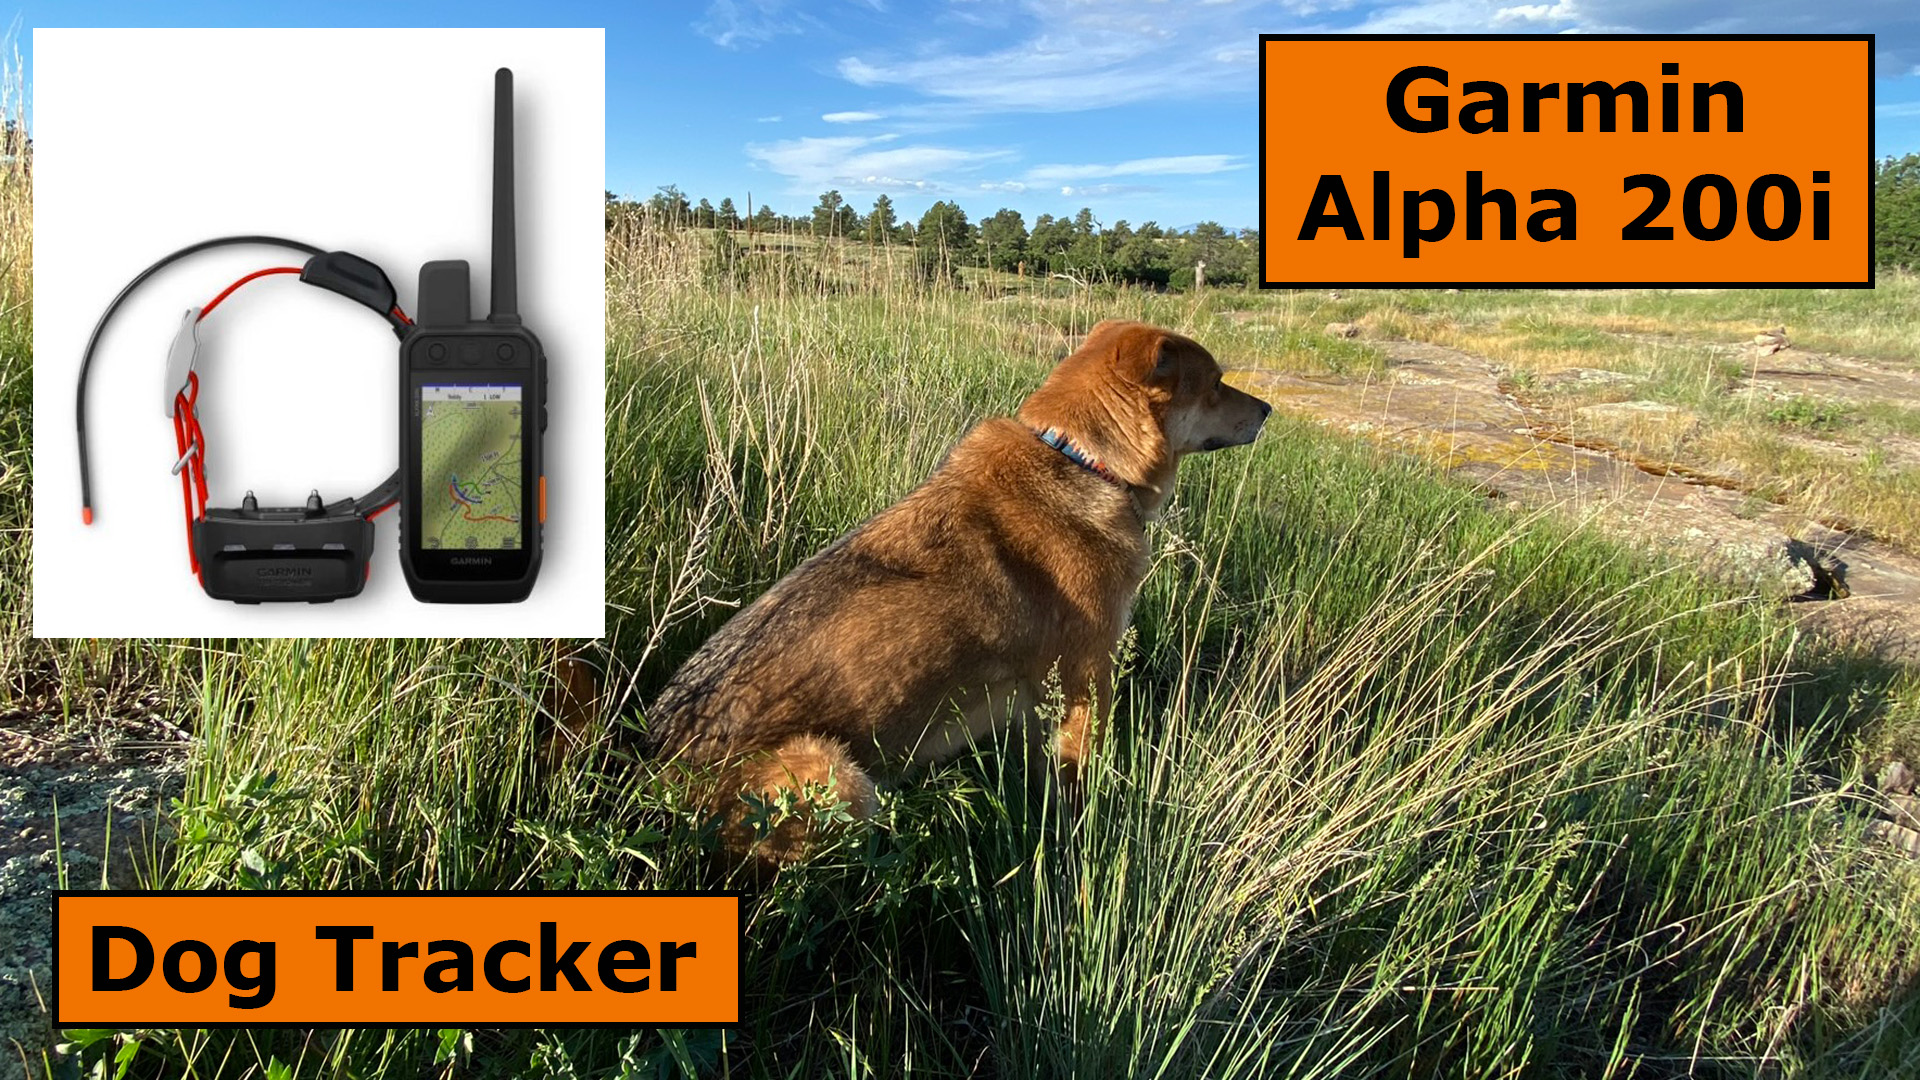 Garmin Alpha 200i Dog Tracker